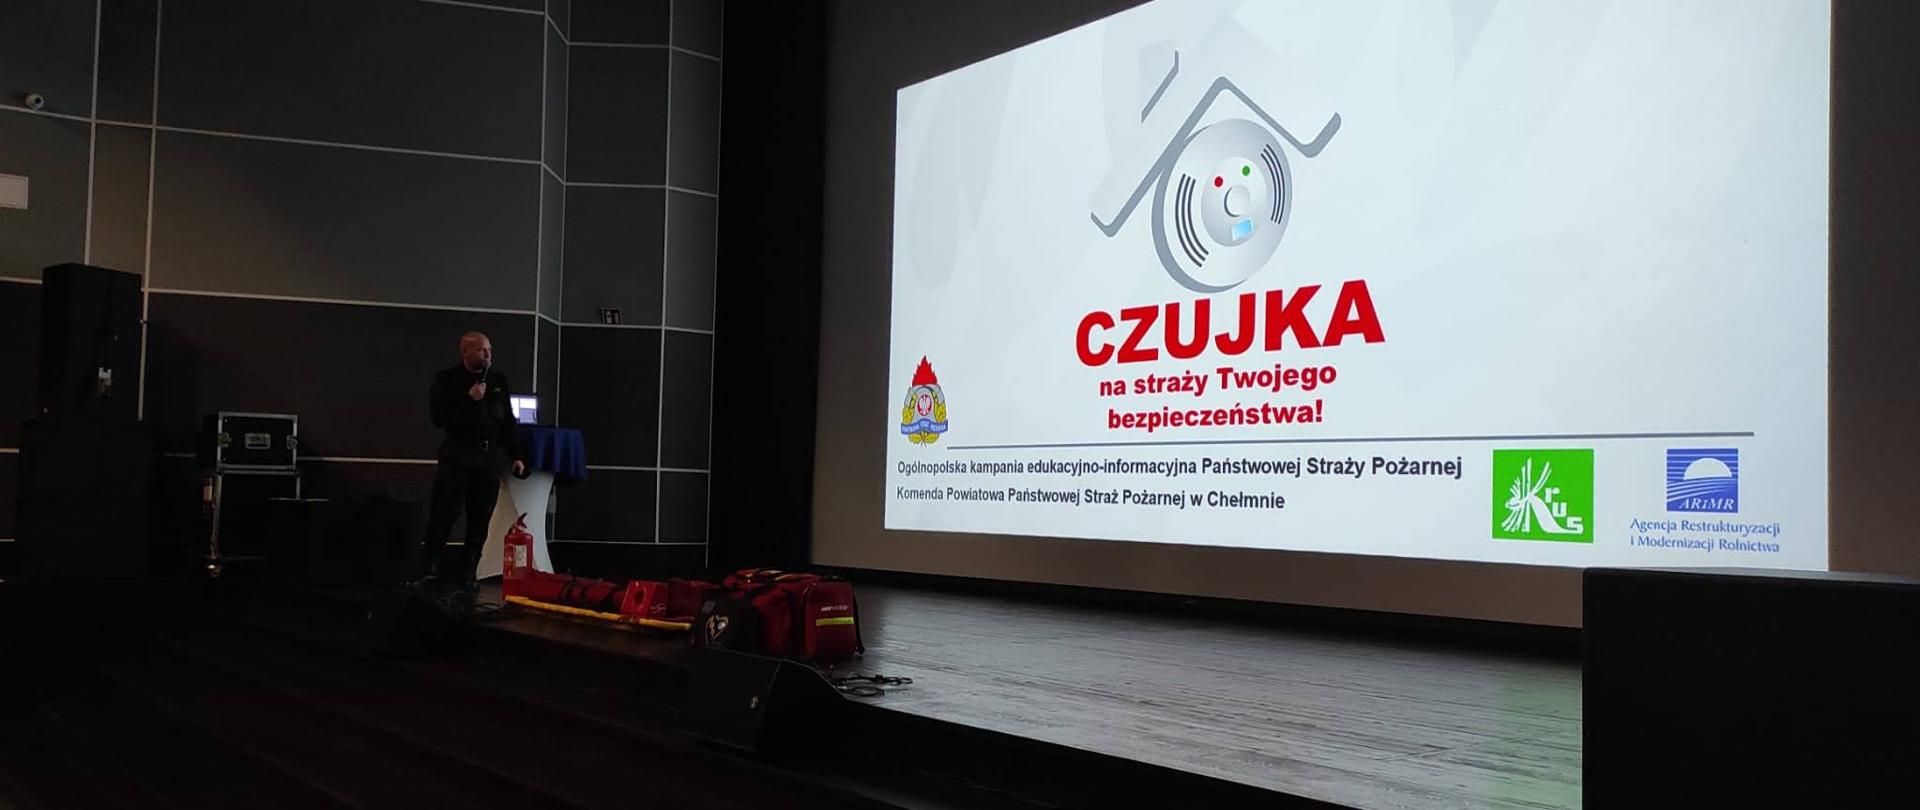 Na zdjęciu ml. kpt. Kasper Korczak podczas prowadzenia wykładu w Kinoteatrze Rondo w Chełmnie, dodatkowo przed ekranem kinowym znajdują się torba medyczna PSP R1, oraz nosze typu deska.